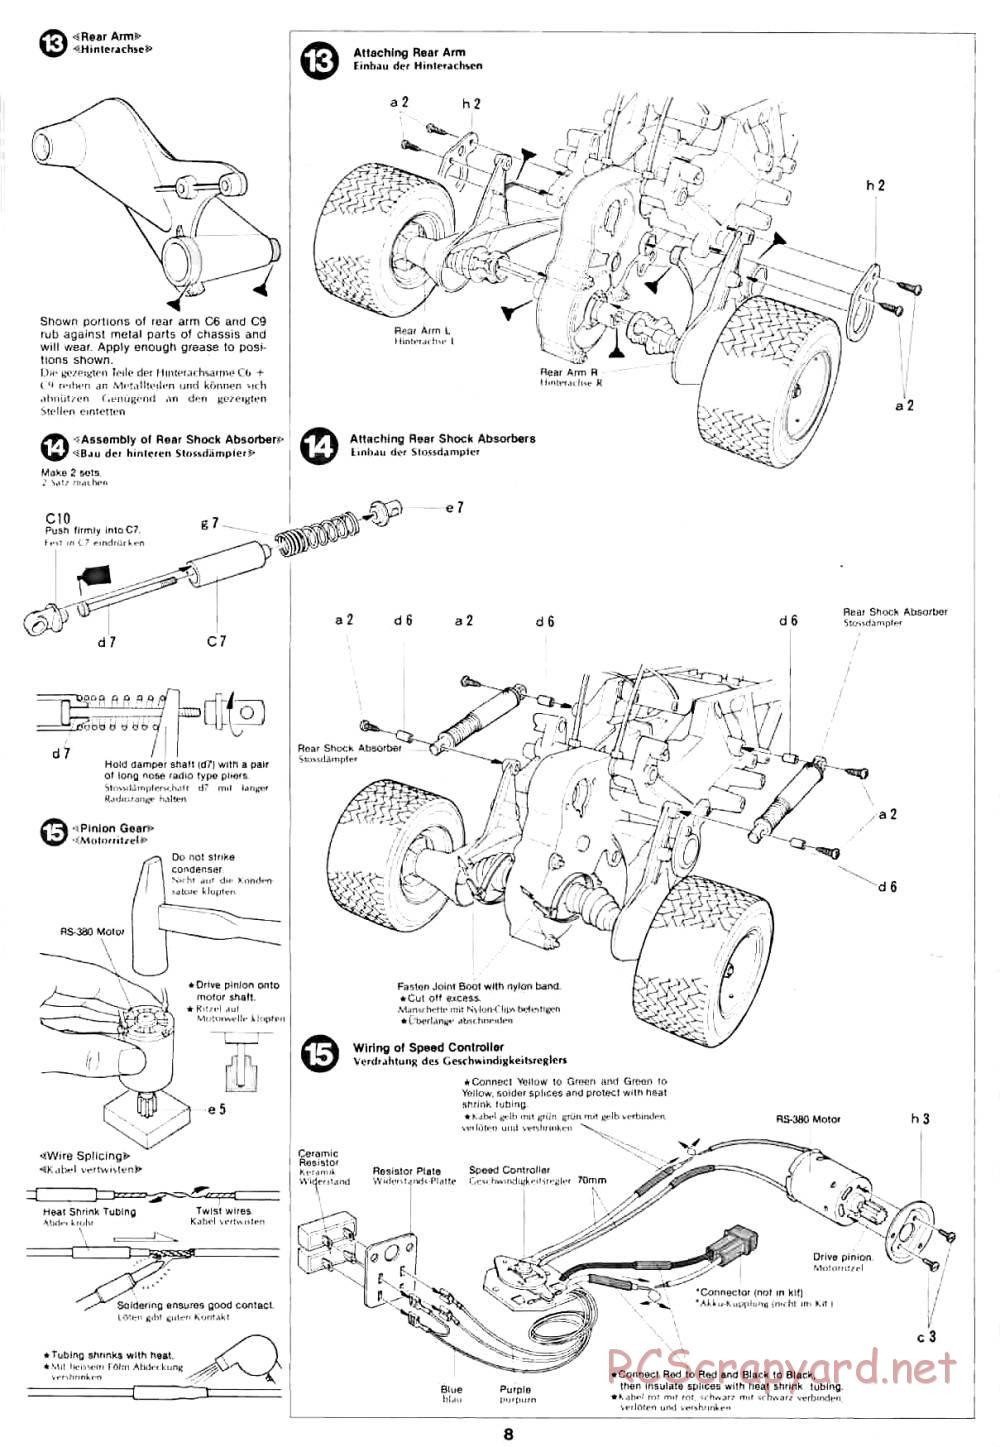 Tamiya - Lancia Rally - 58040 - Manual - Page 8